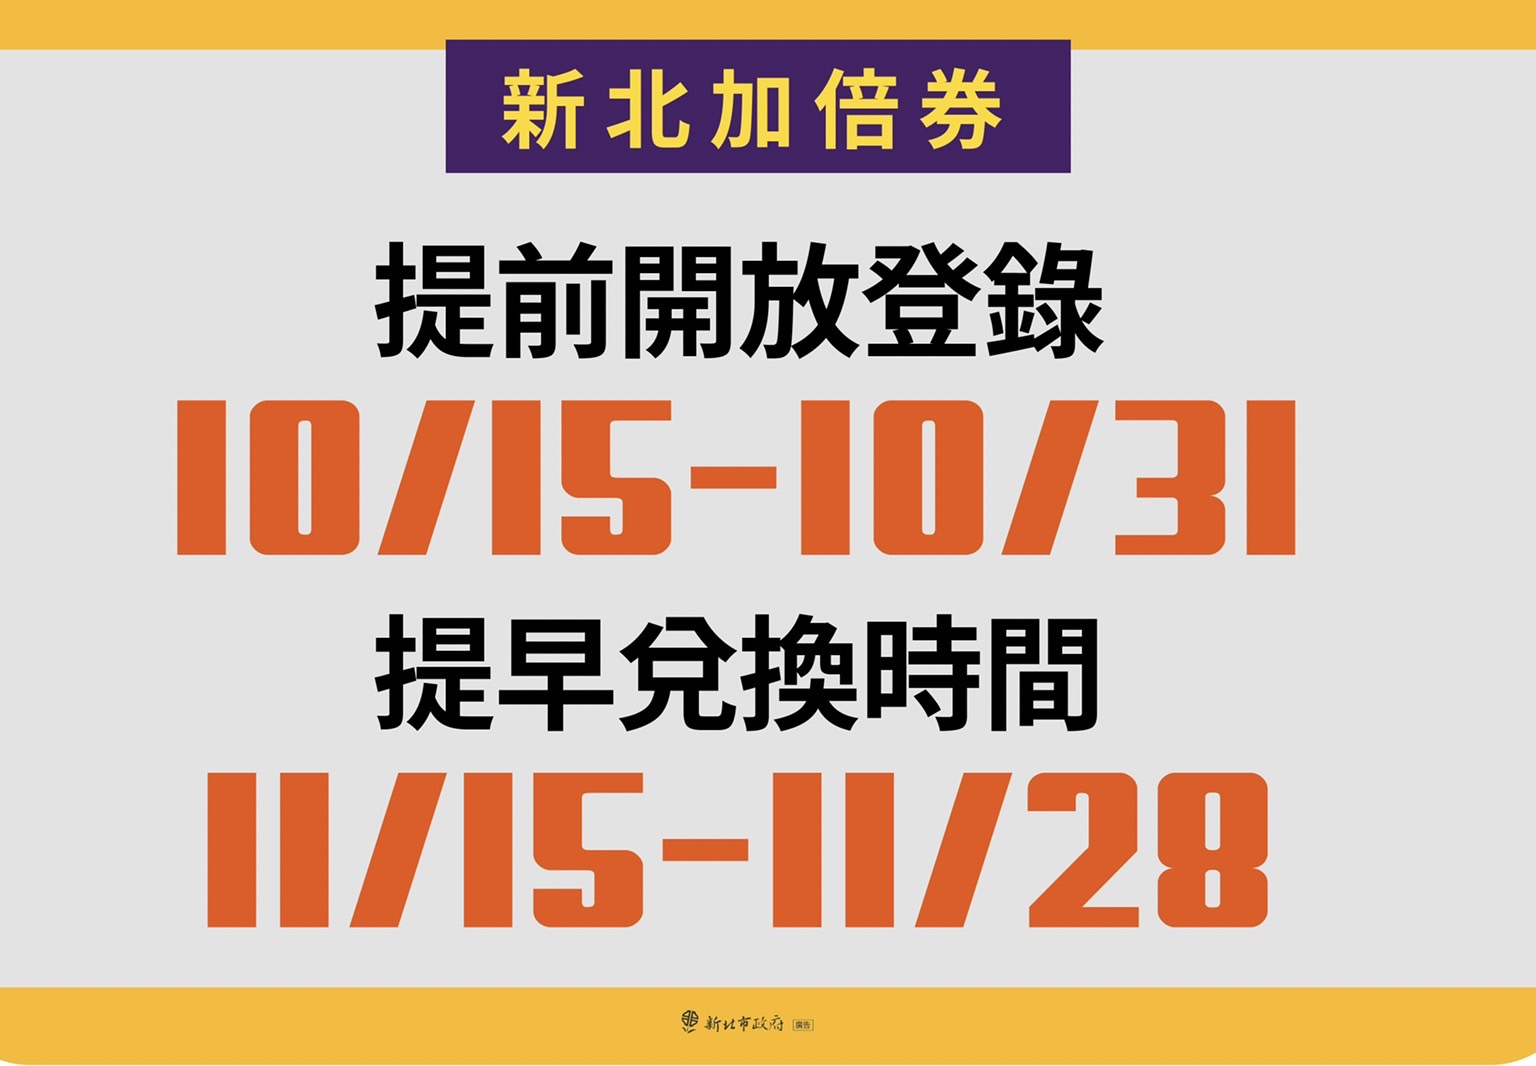 新北加倍券10月20日到10月31日開放登記抽獎。